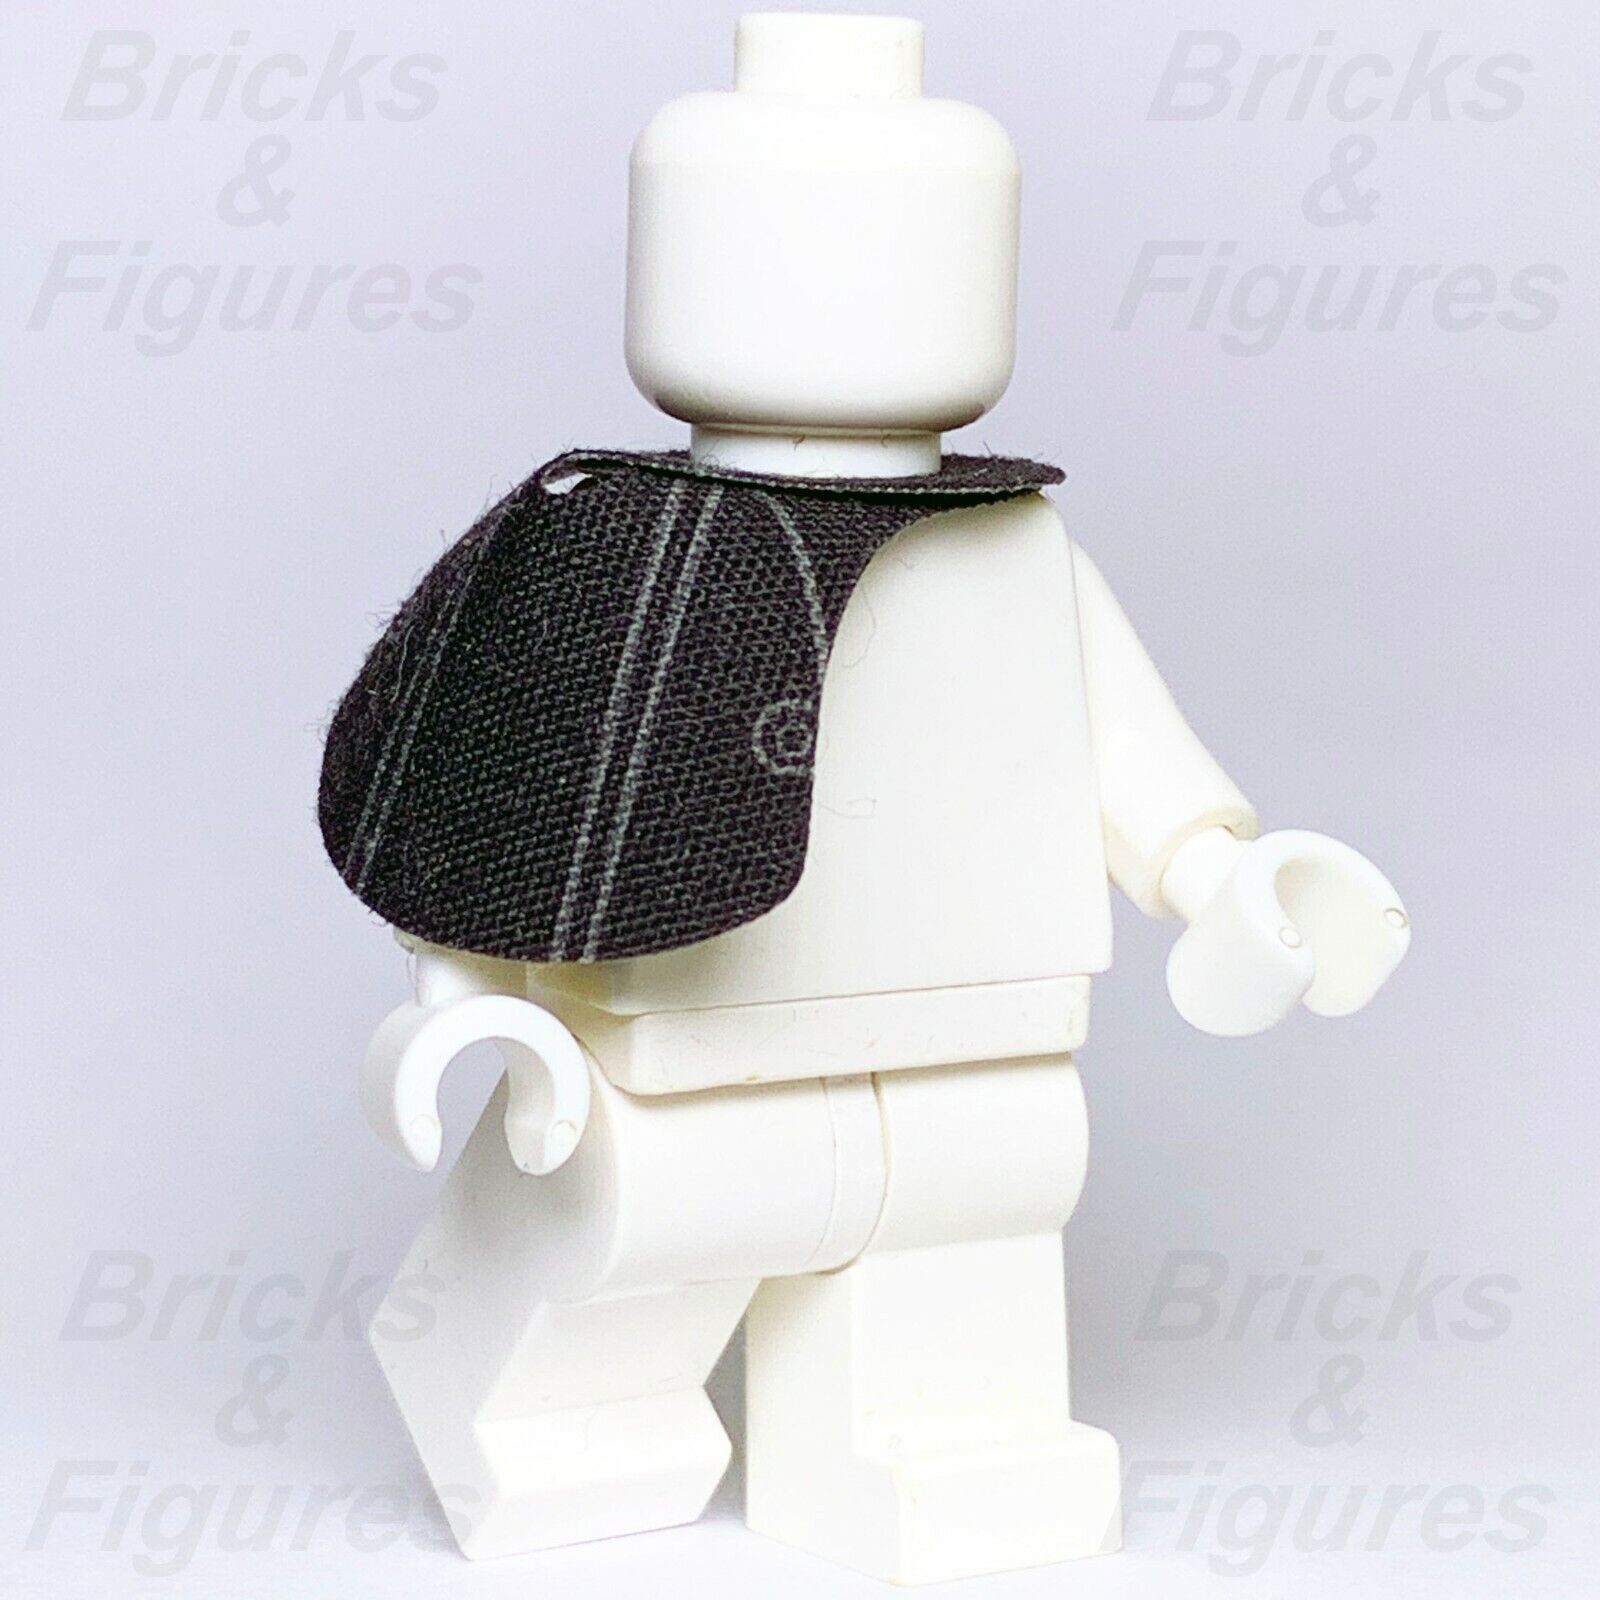 Star Wars LEGO Pauldron for Sandtrooper Death Trooper Minifig 75221 75156 75052